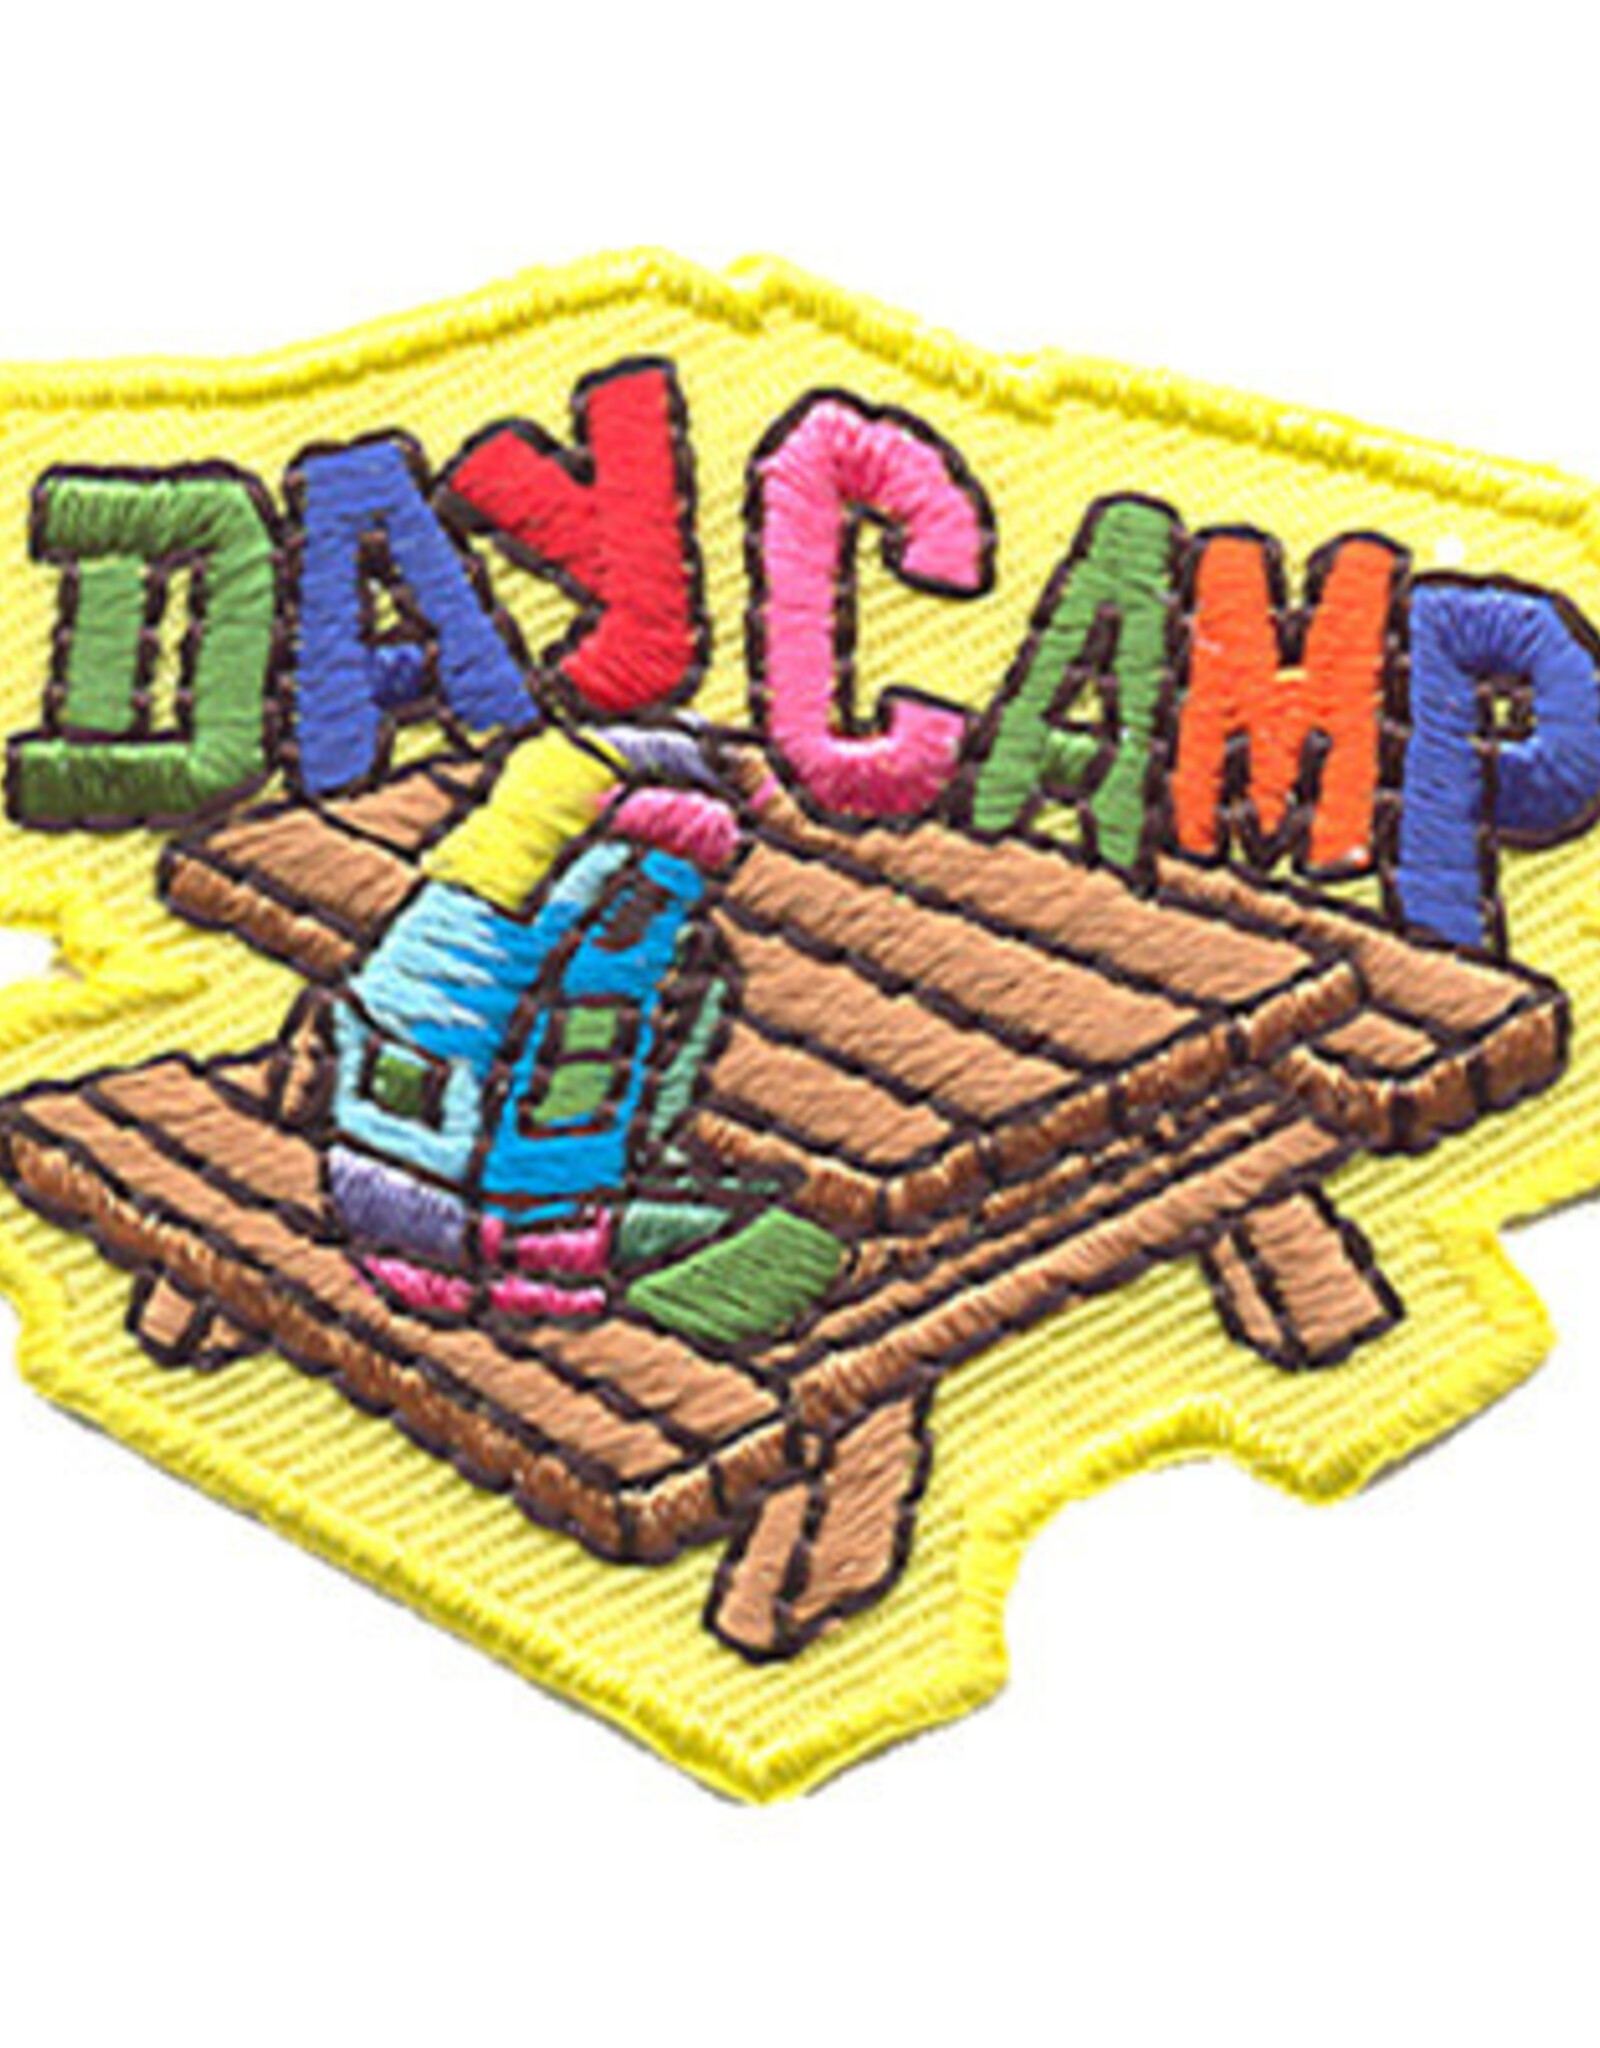 Advantage Emblem & Screen Prnt Day Camp w/Picknic Table